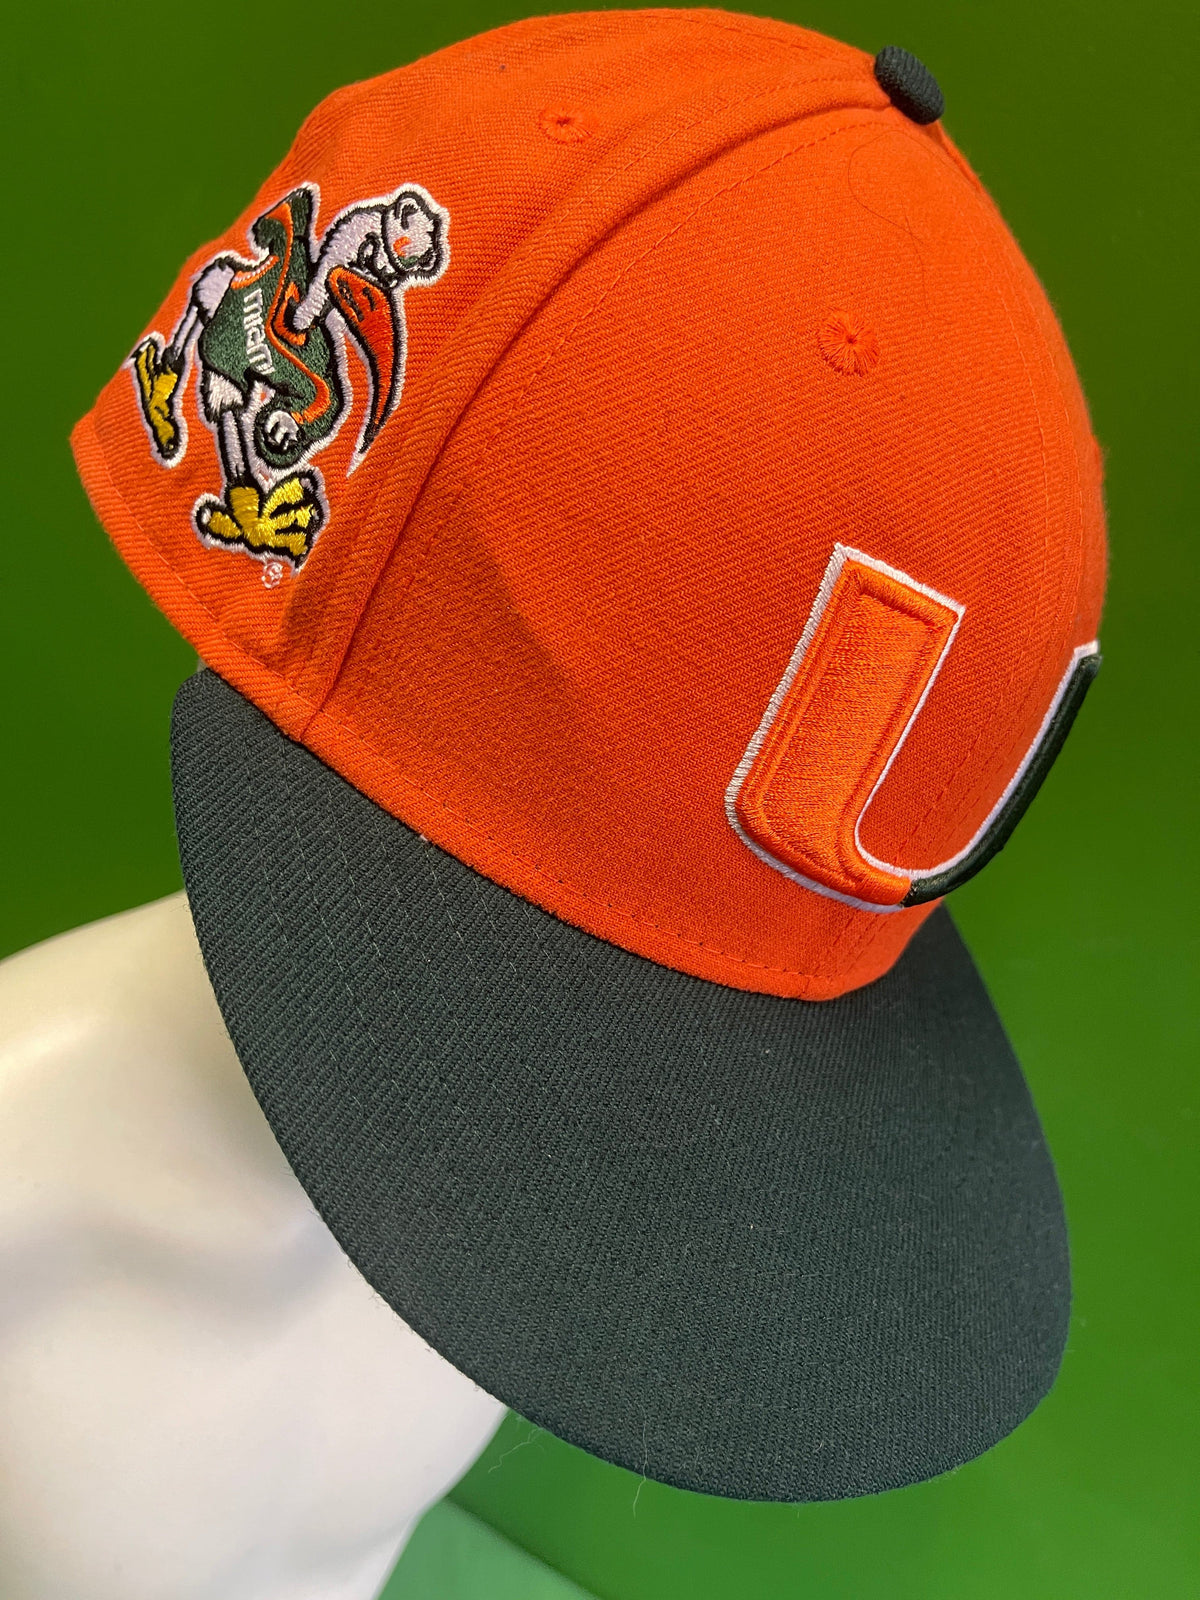 NCAA Miami Hurricanes New Era 9FIFTY Snapback Hat/Cap OSFM